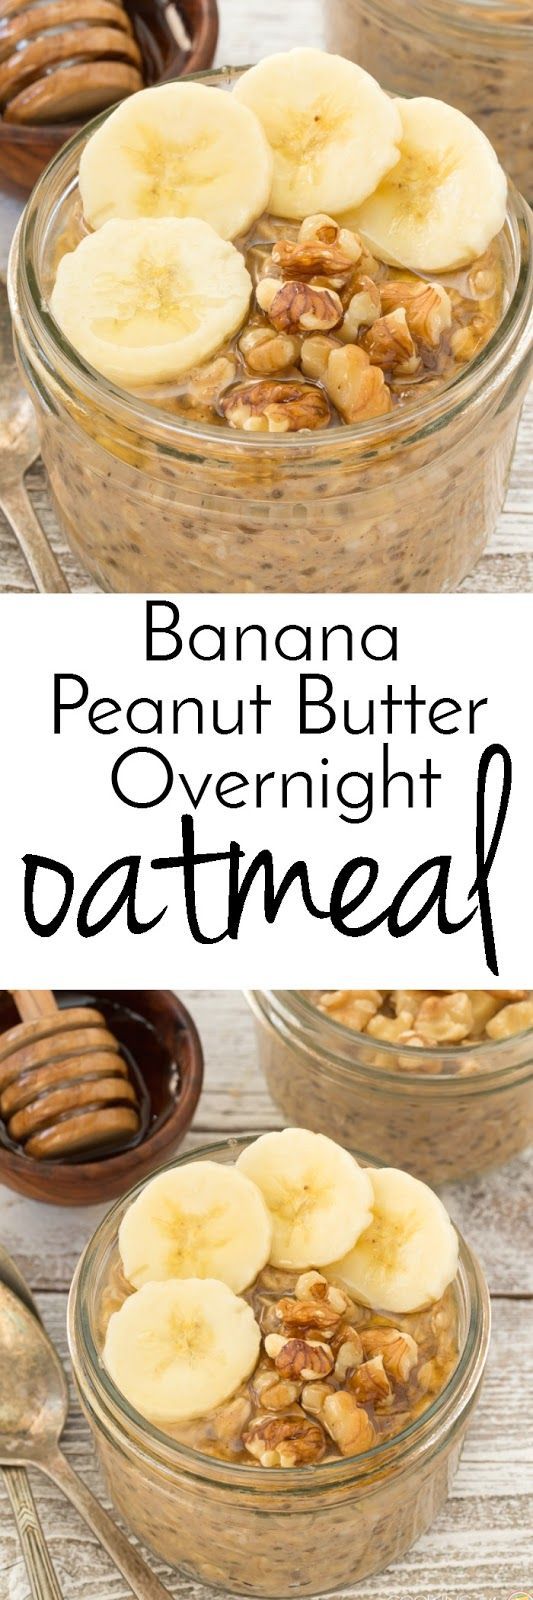 15 Oatmeal Recipe Ideas for Breakfast